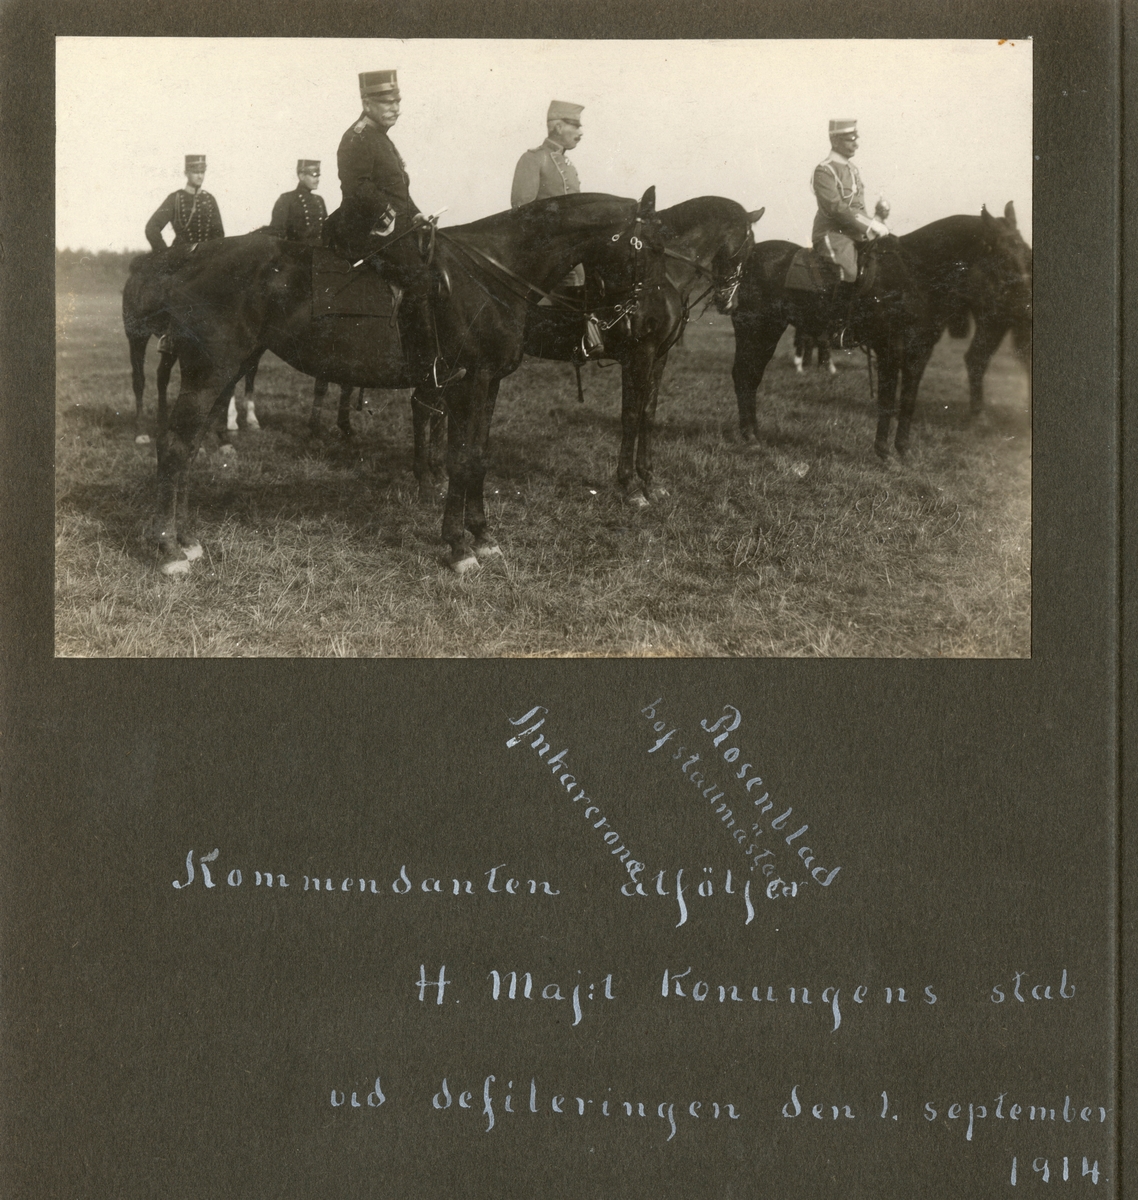 Text i fotoalbum:  ”Kommendanten åtföljer H. Maj:t Konungens stab vid defileringen den 1. september 1914.”

På bilden Ankarcrona, hovstallmästare, Rosenblad.